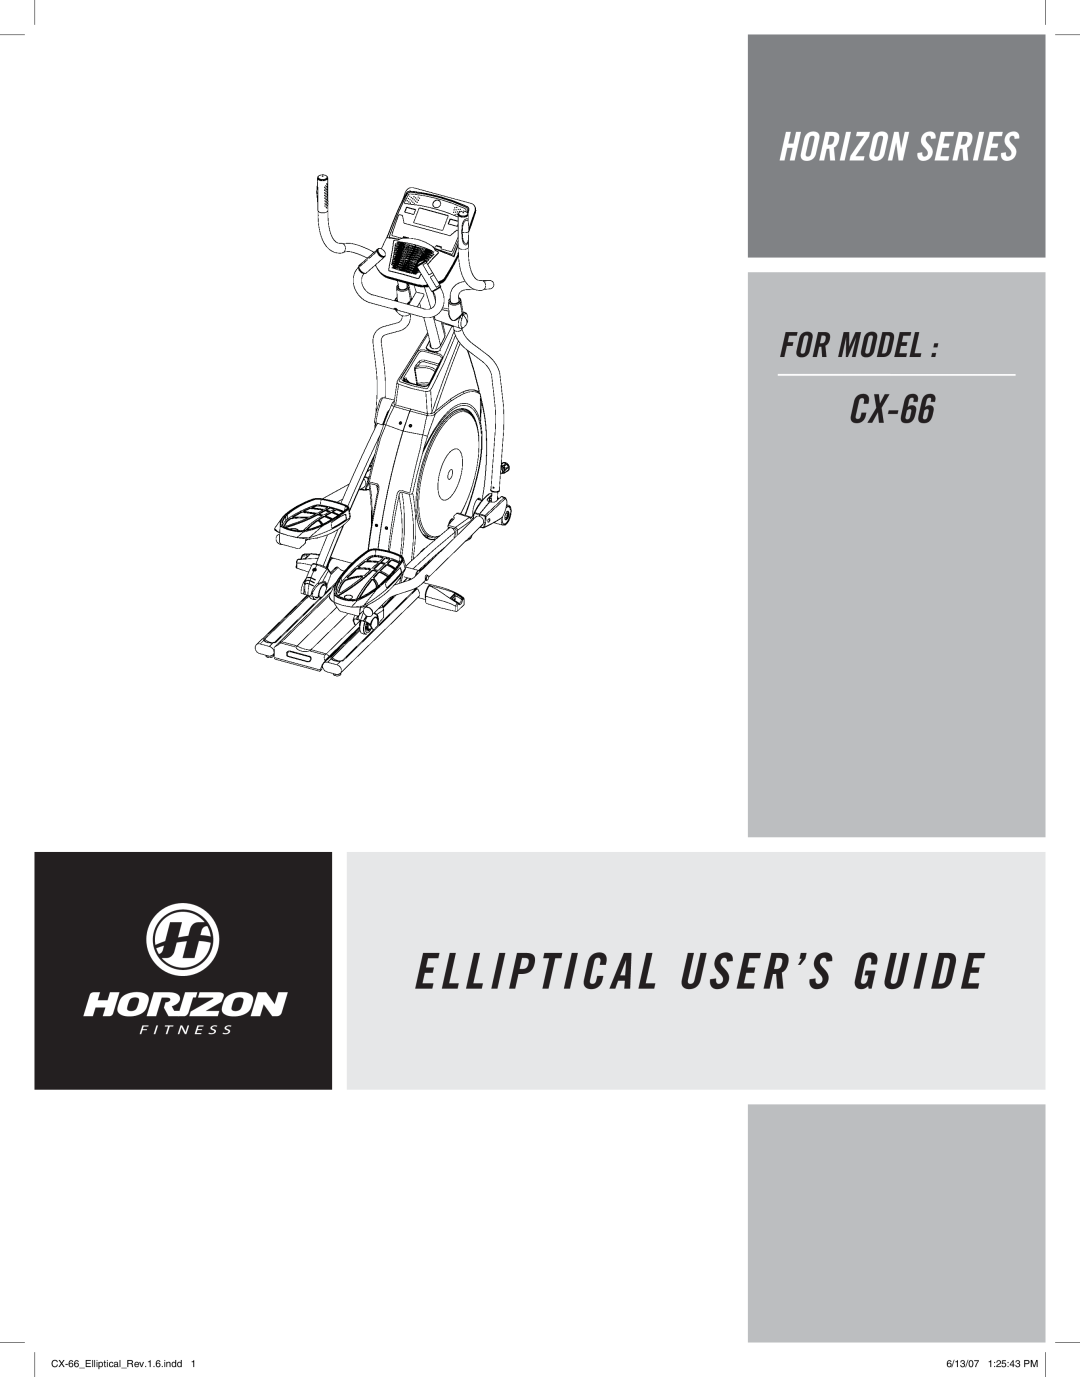 Horizon Fitness manual Elliptical User’S Guide, Horizon Series, For Model, CX-66EllipticalRev.1.6.indd 